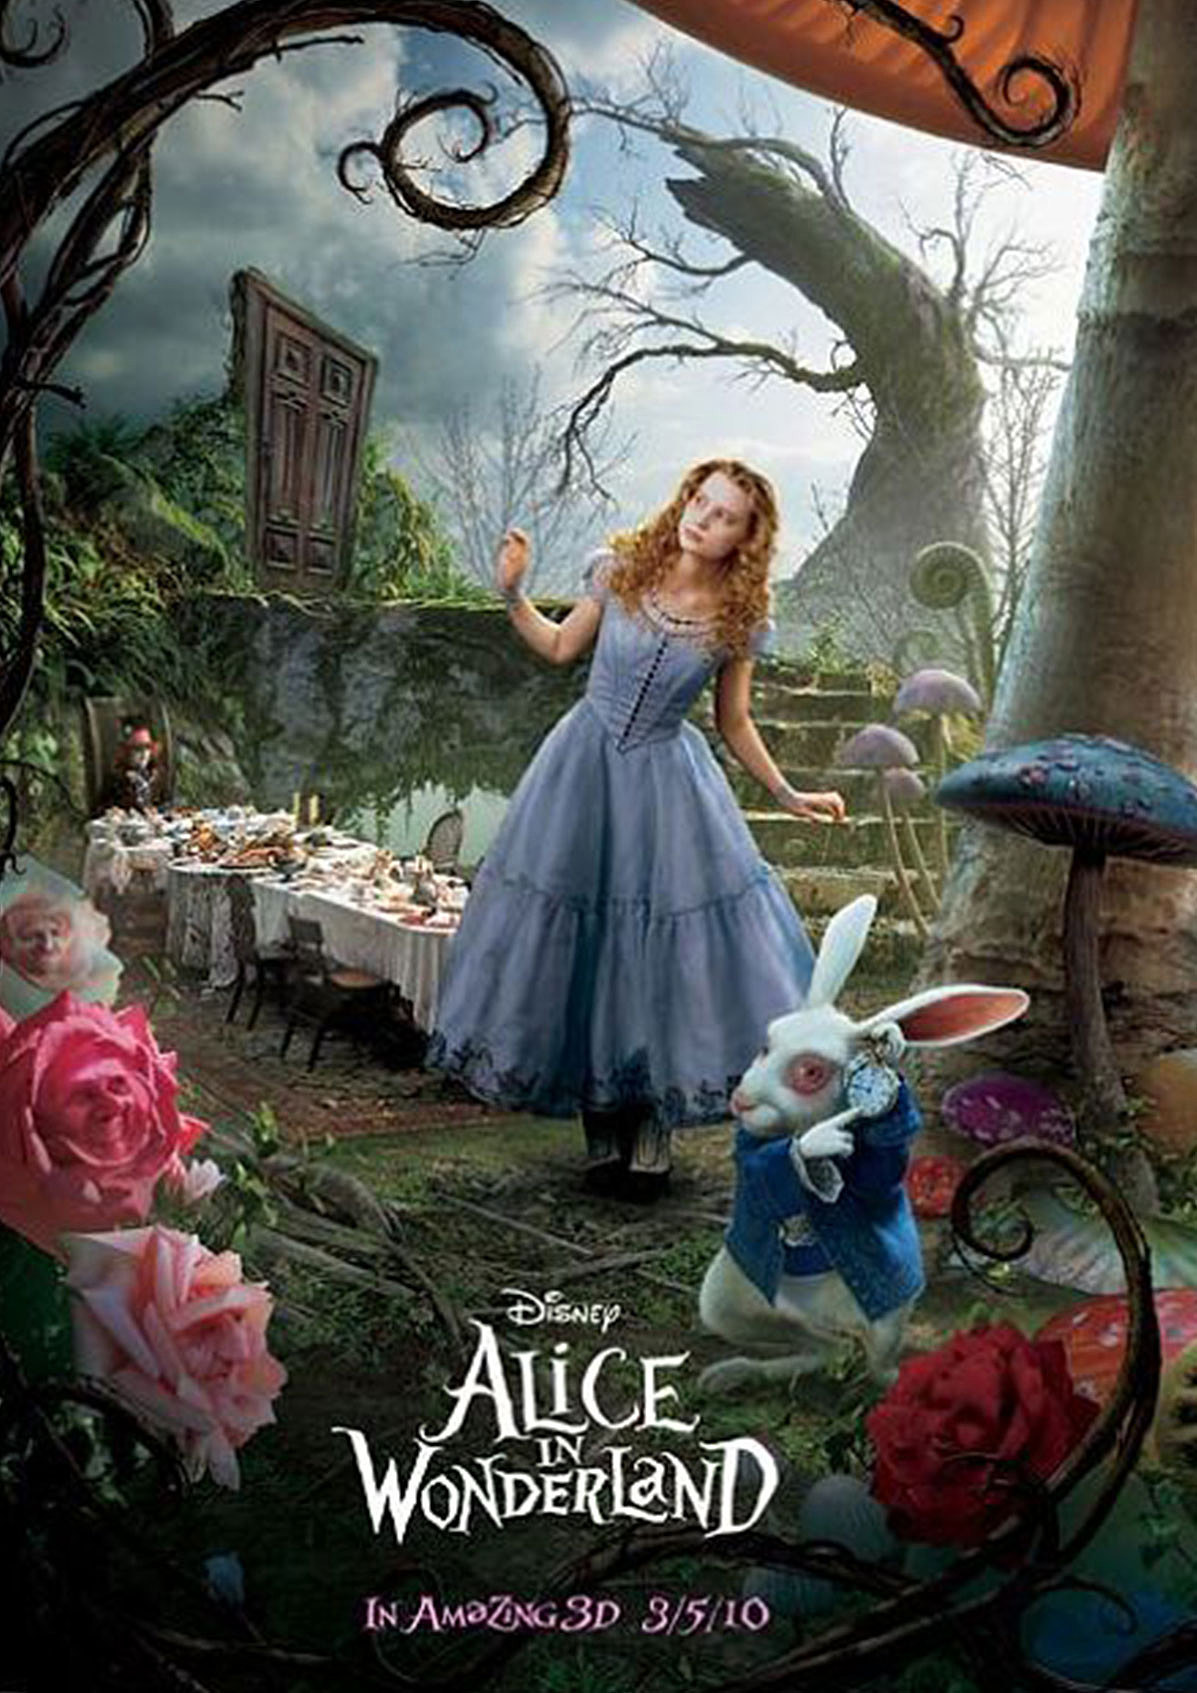 爱丽丝梦游仙境(Alice in Wonderland)-电影-腾讯视频